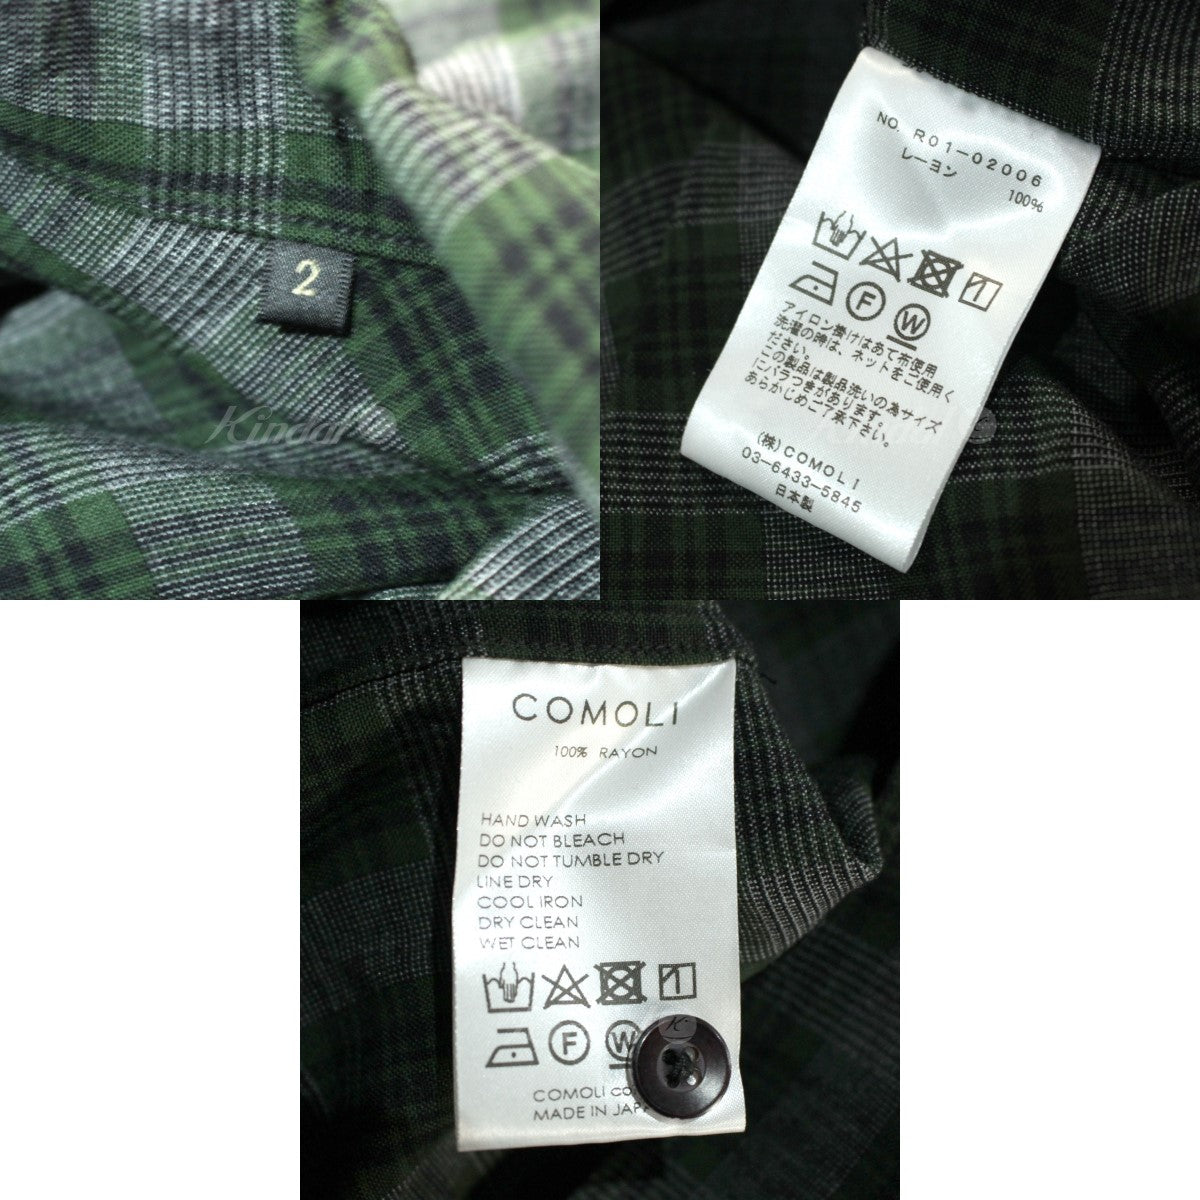 COMOLI 20ss レーヨンオープンカラーシャツ グリーン サイズ2used品の状態について